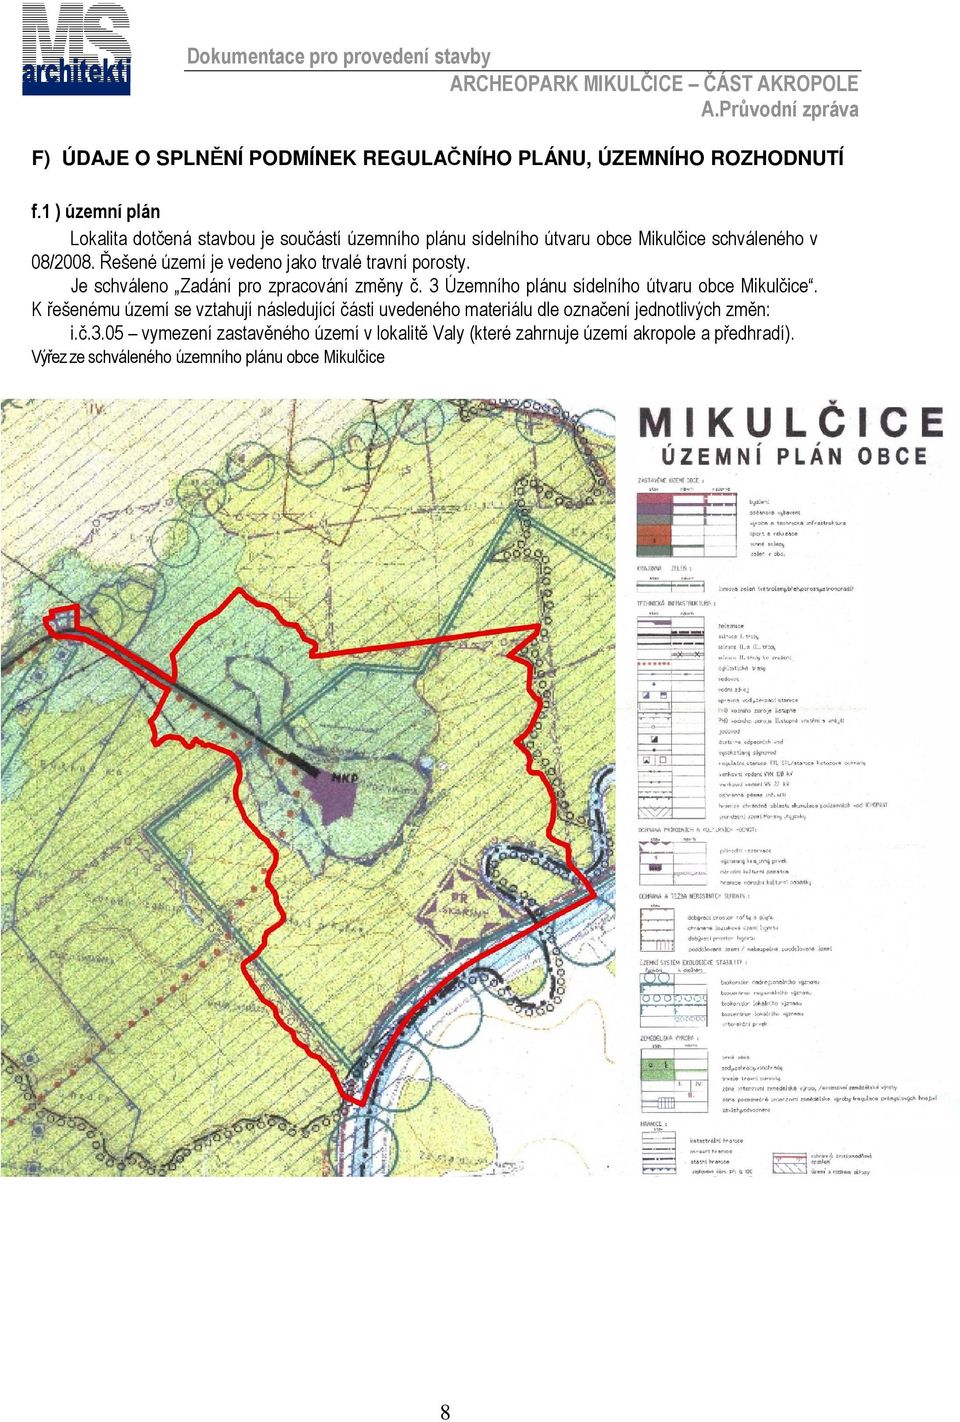 Řešené území je vedeno jako trvalé travní porosty. Je schváleno Zadání pro zpracování změny č. 3 Územního plánu sídelního útvaru obce Mikulčice.